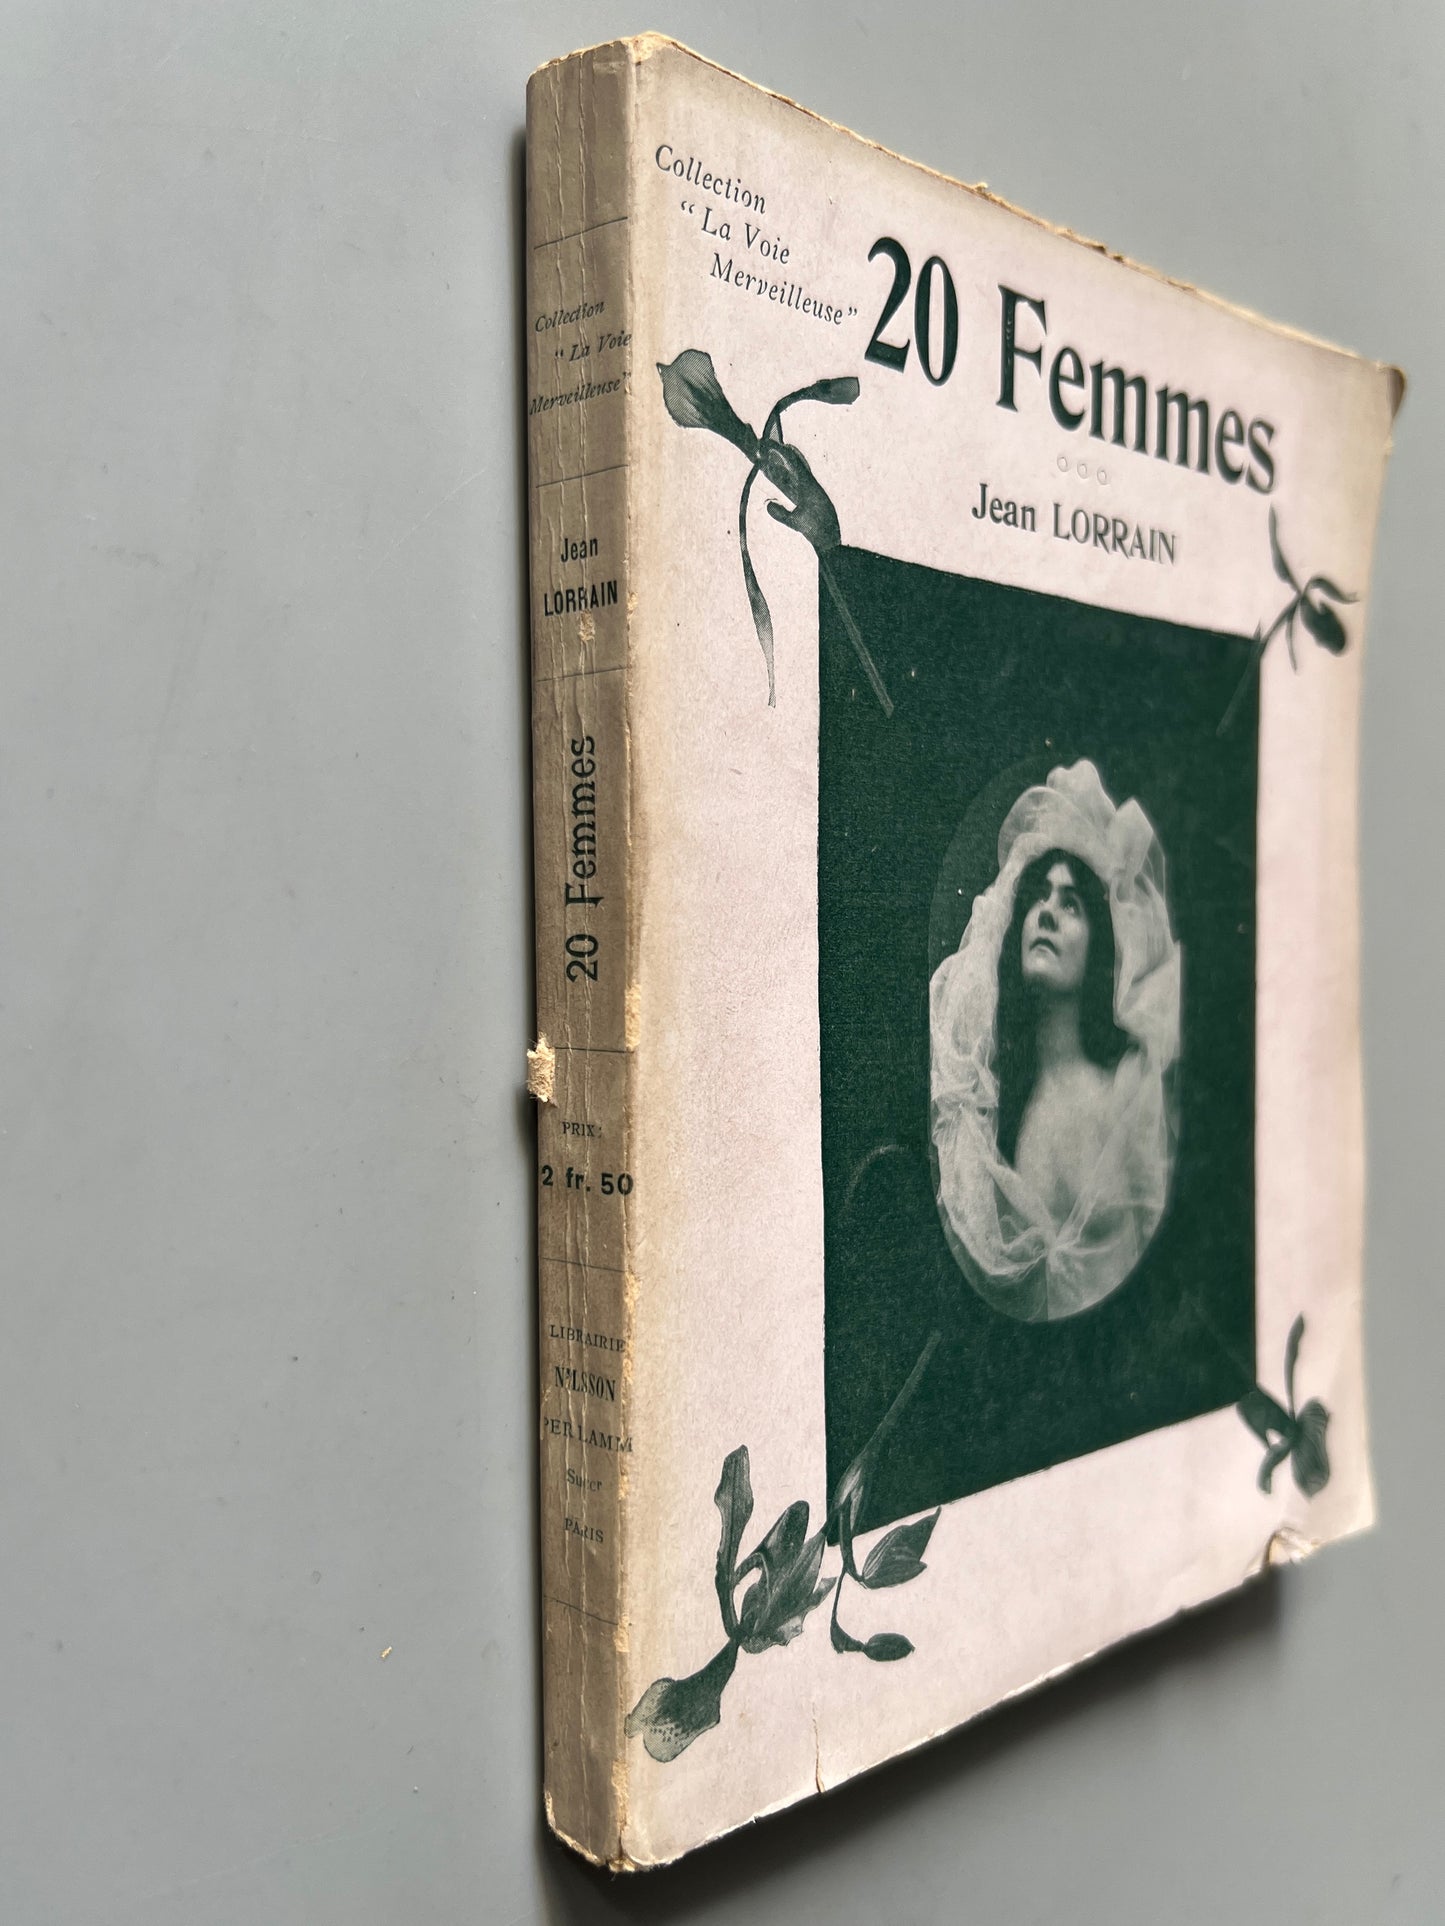 20 femmes, Jean Lorrain - Libraire Nilsson, ca. 1900